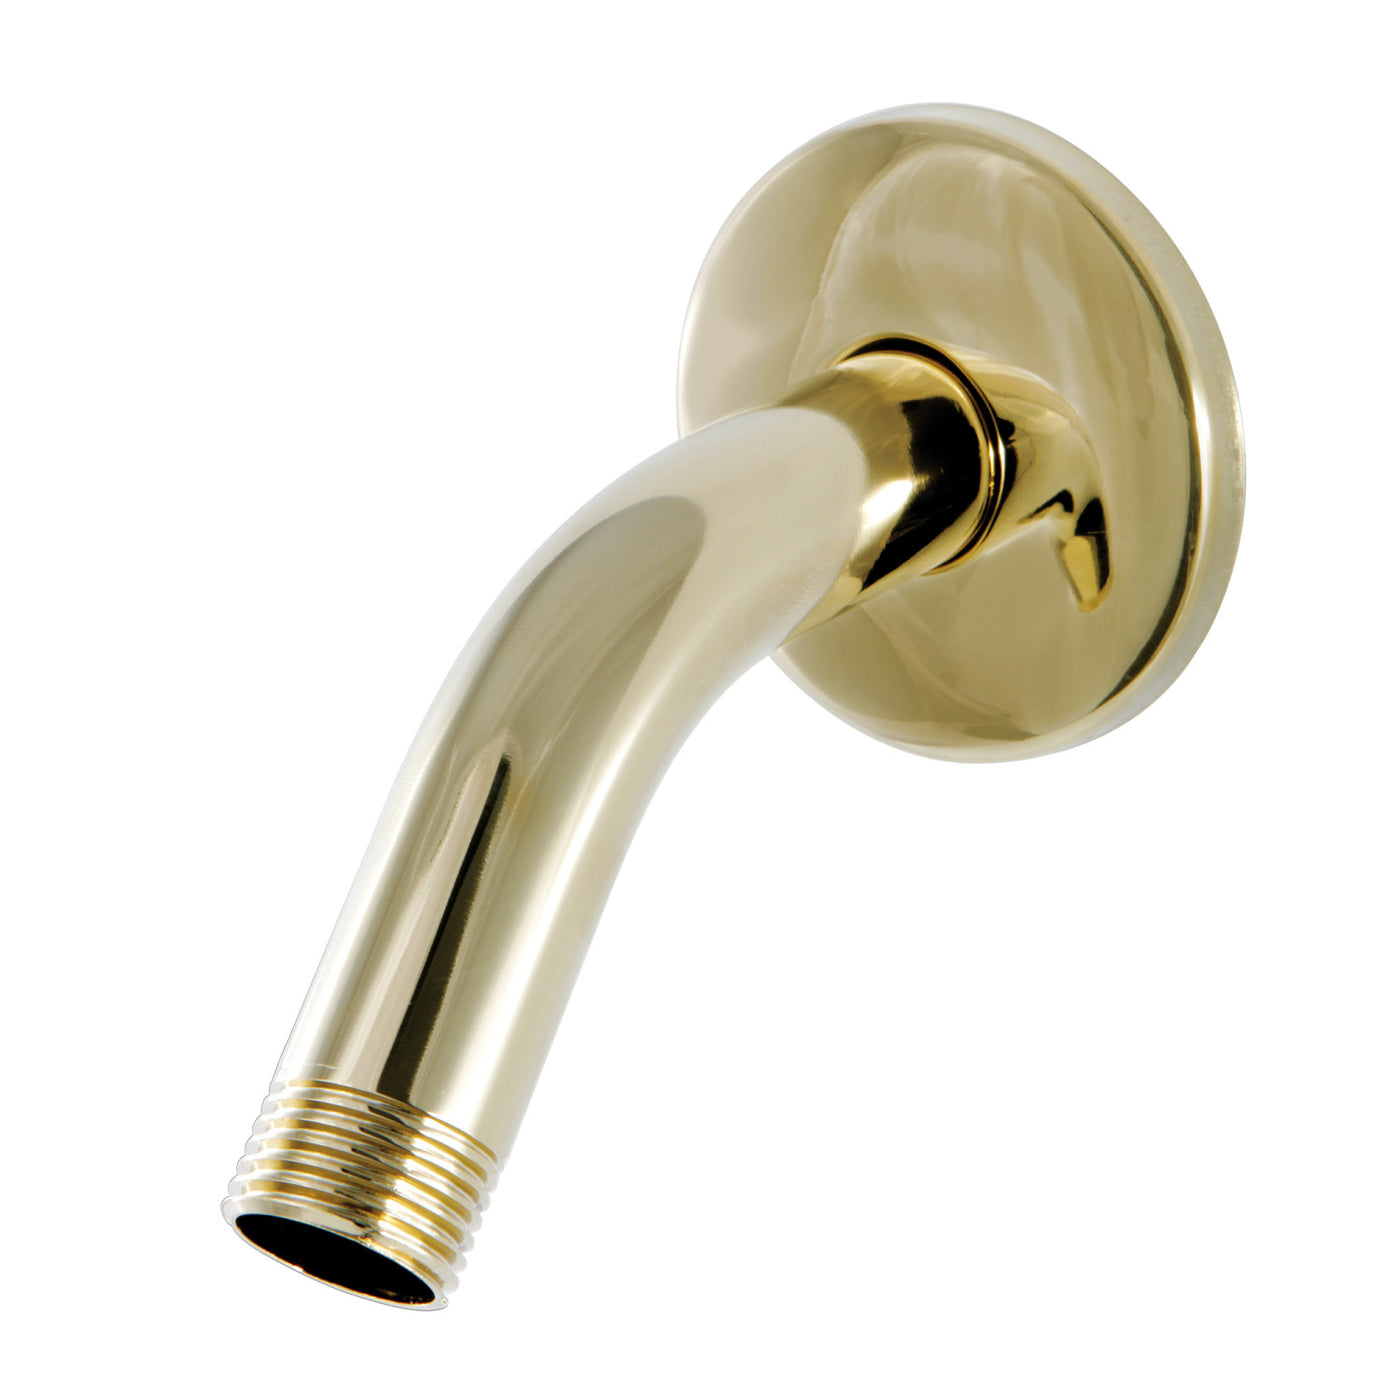 Elements of Design DK150K2 6-Inch Shower Arm with Flange, Polished Brass